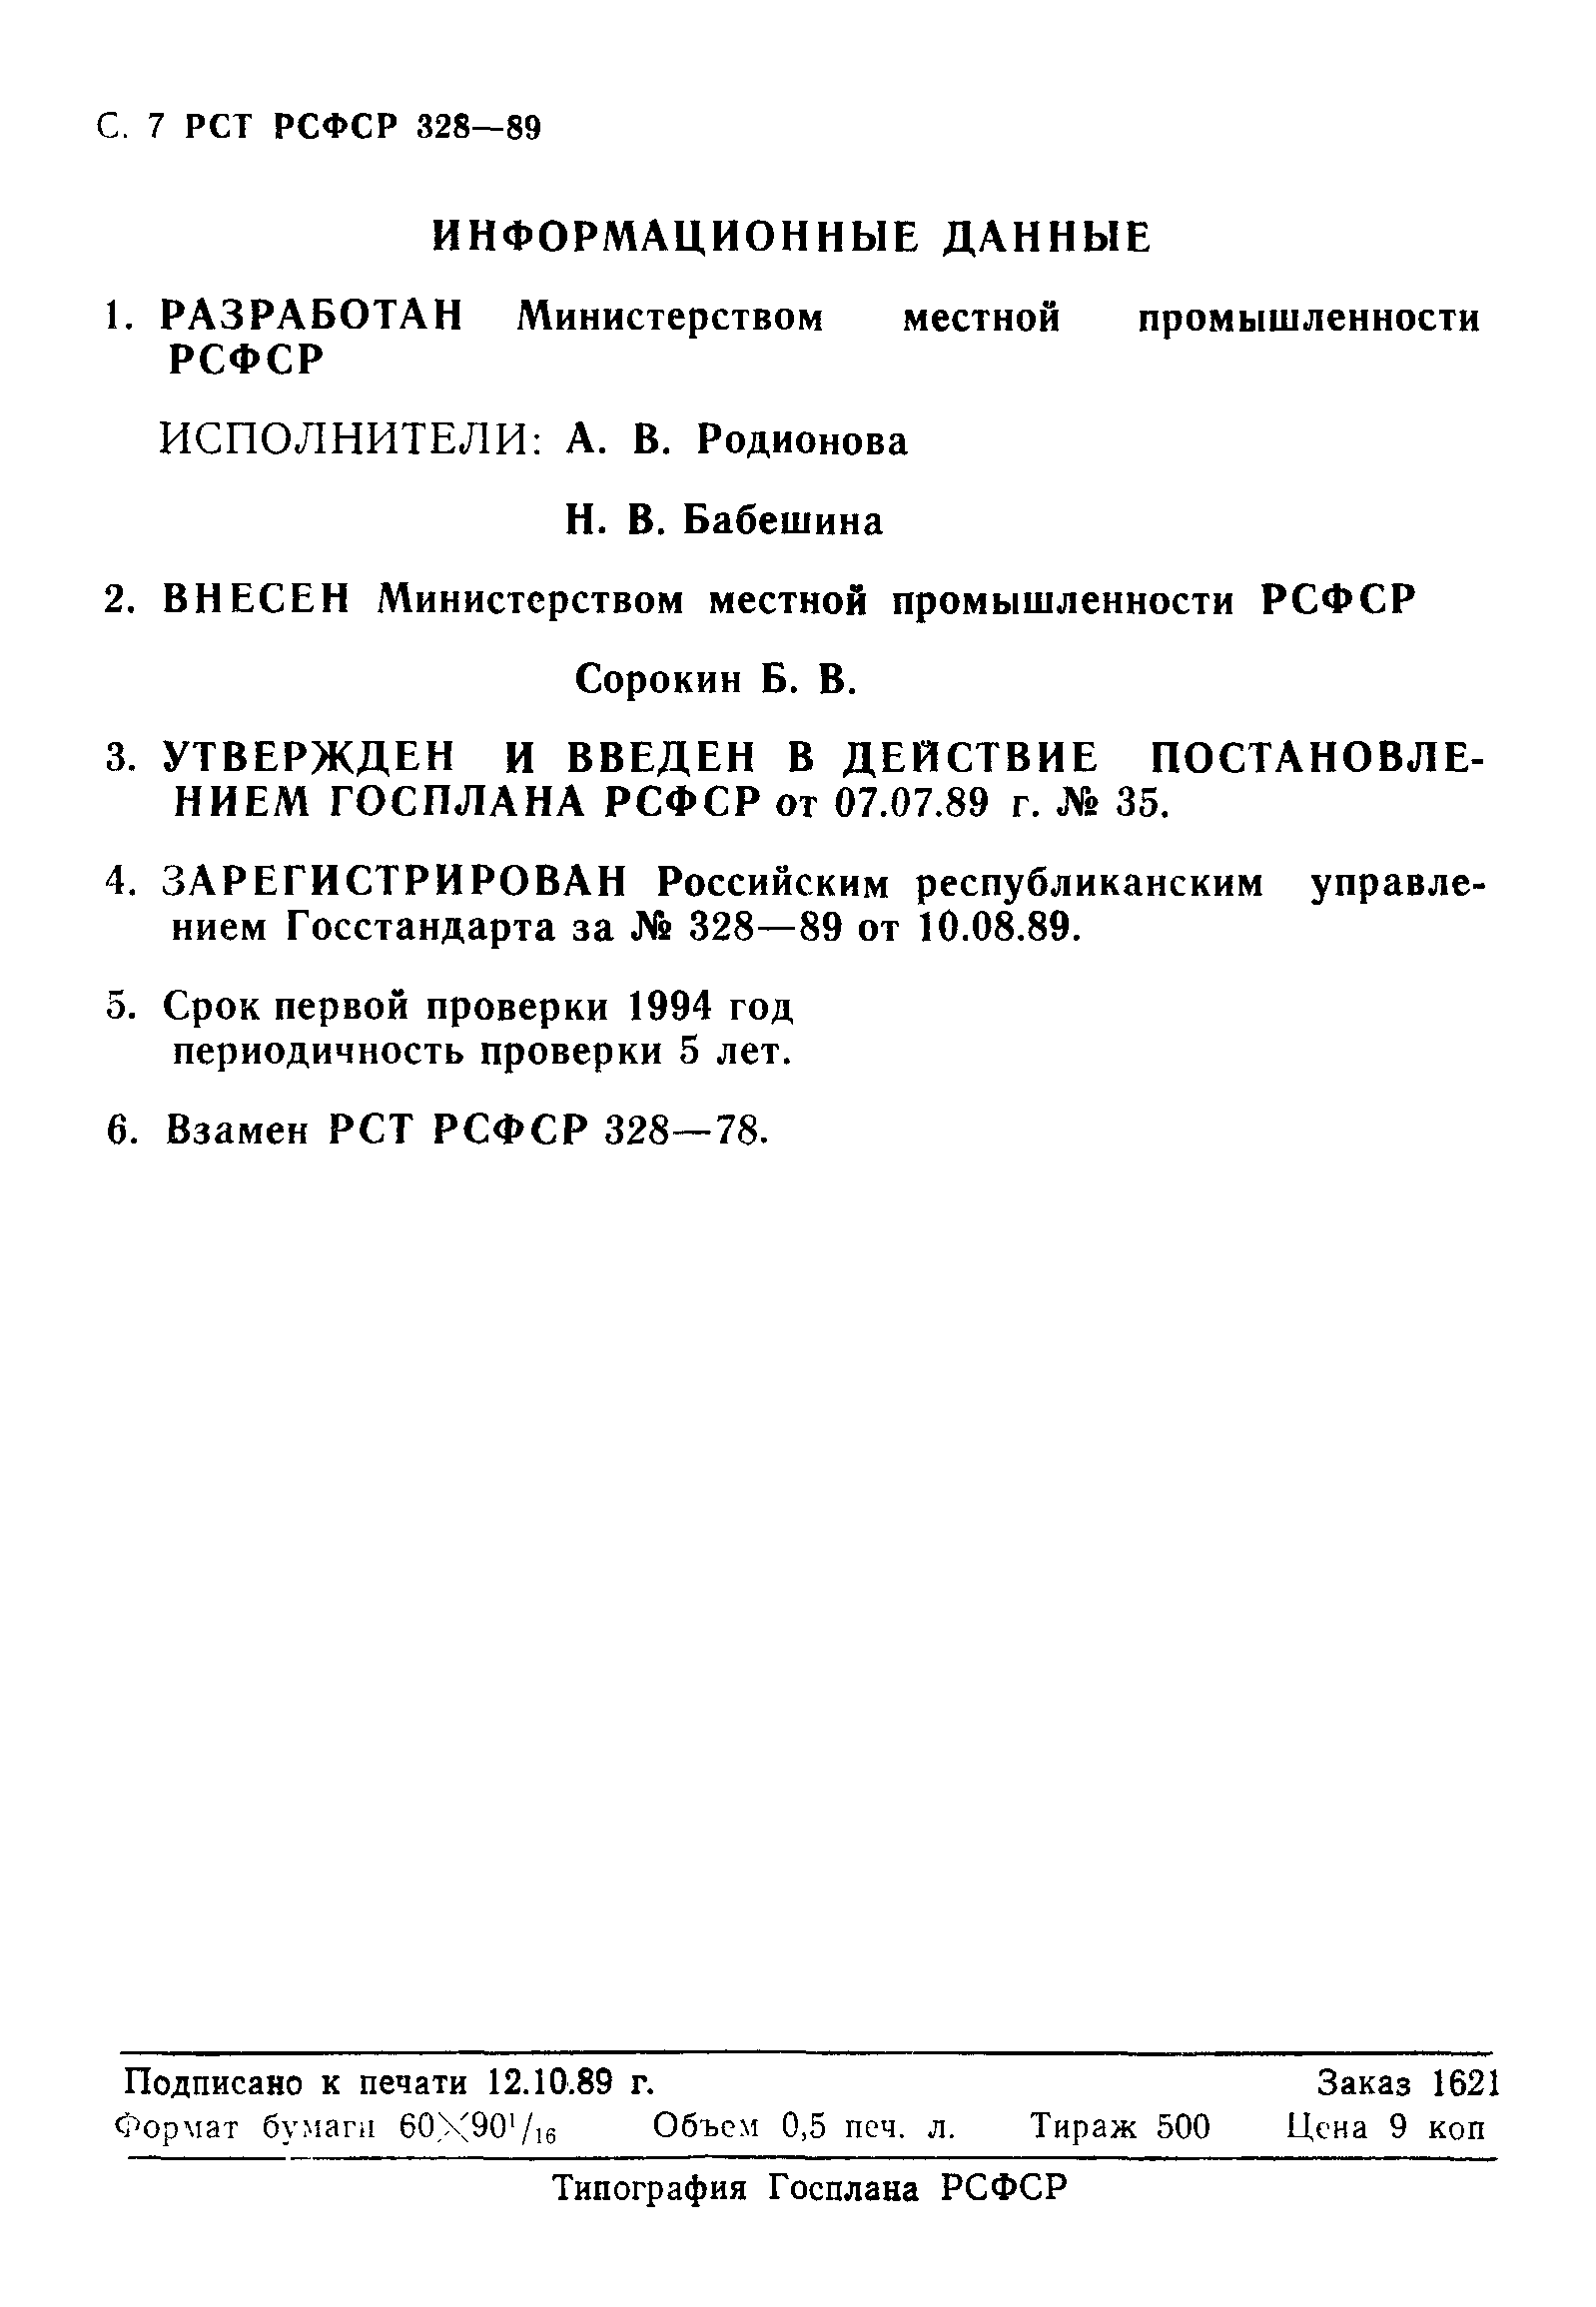 РСТ РСФСР 328-89